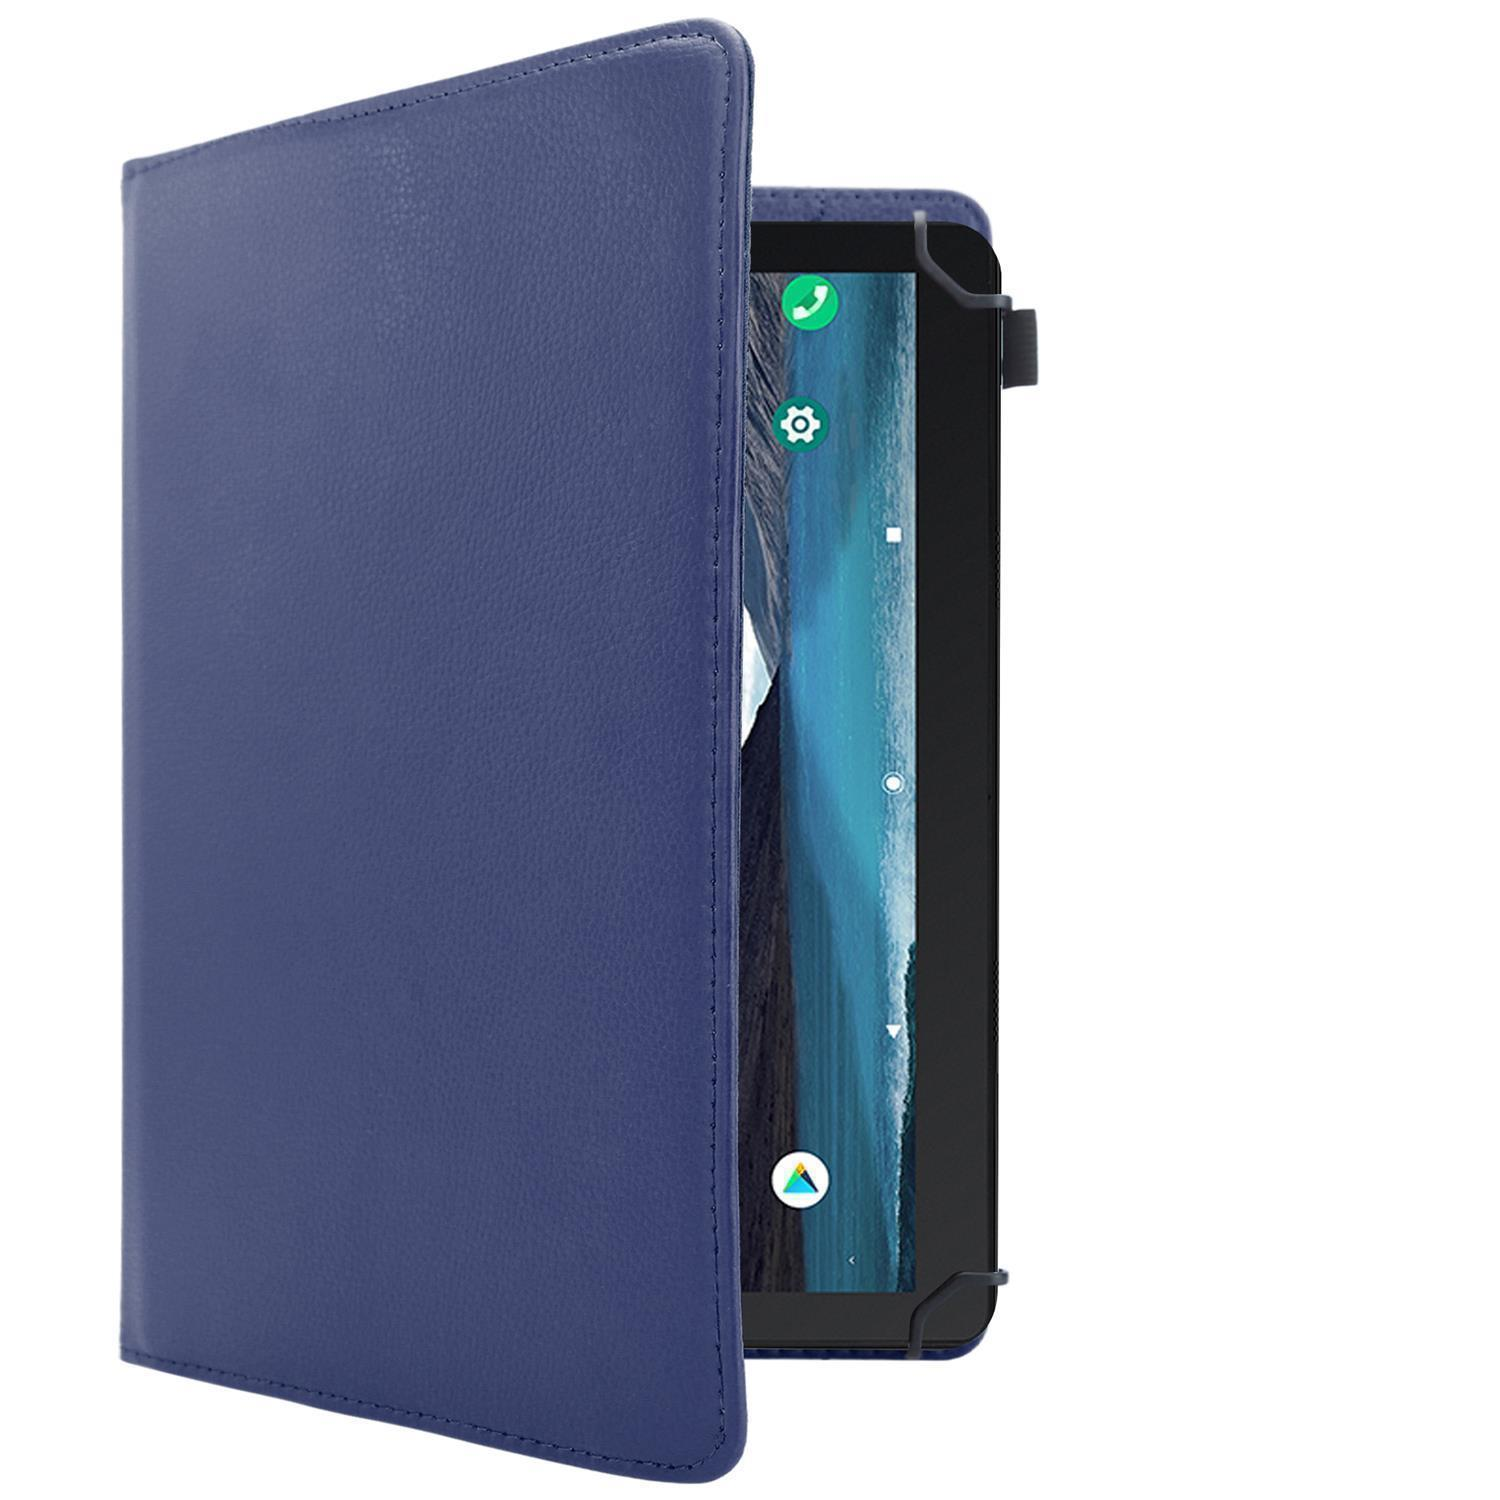 BLAU Kindle DUNKEL Backcover für Grad CADORABO 360 Tablethülle Hülle Kunstleder, Schutz Tablet